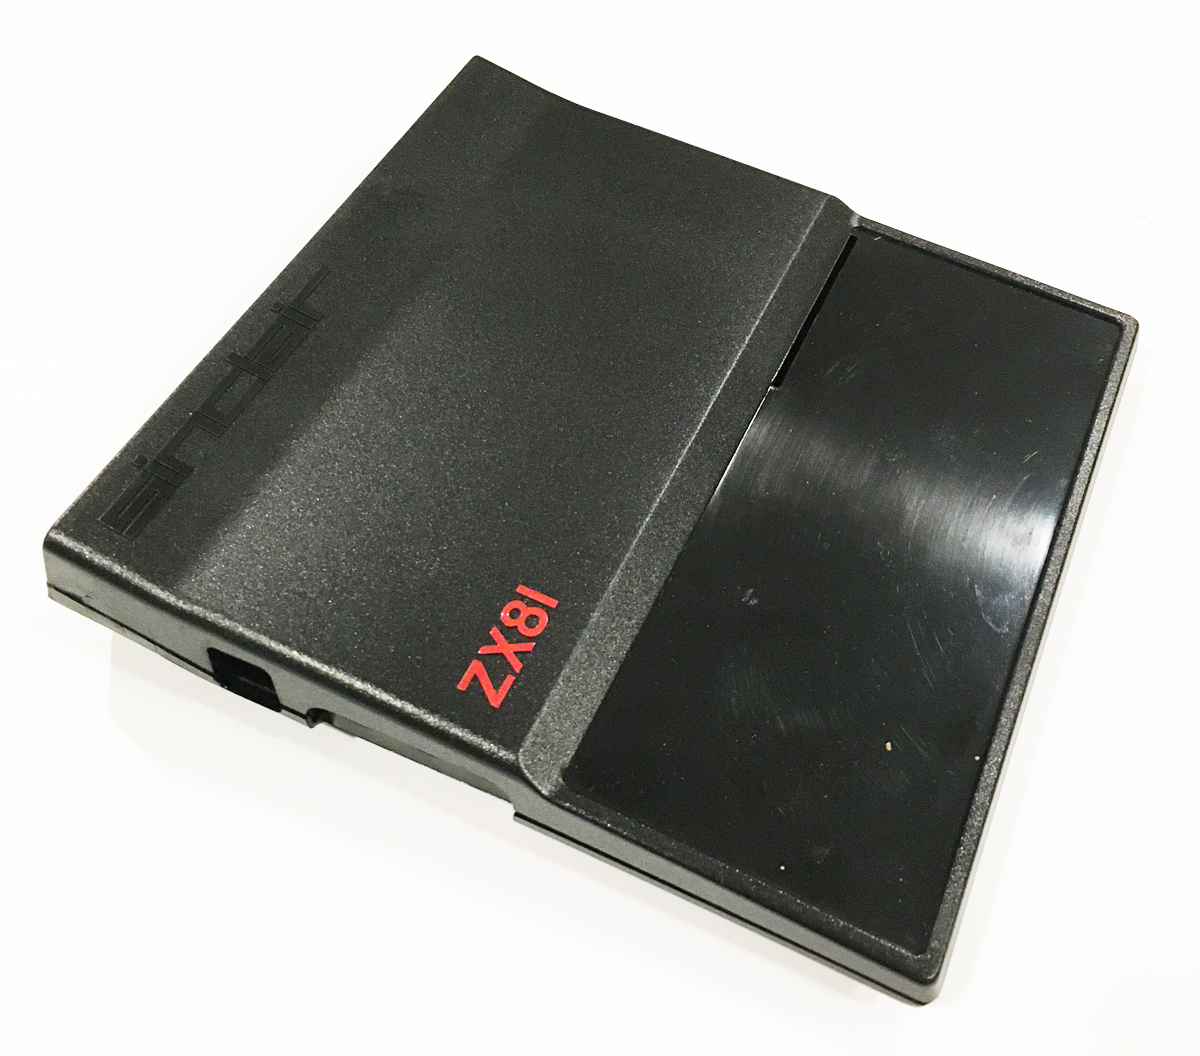 ZX81 case